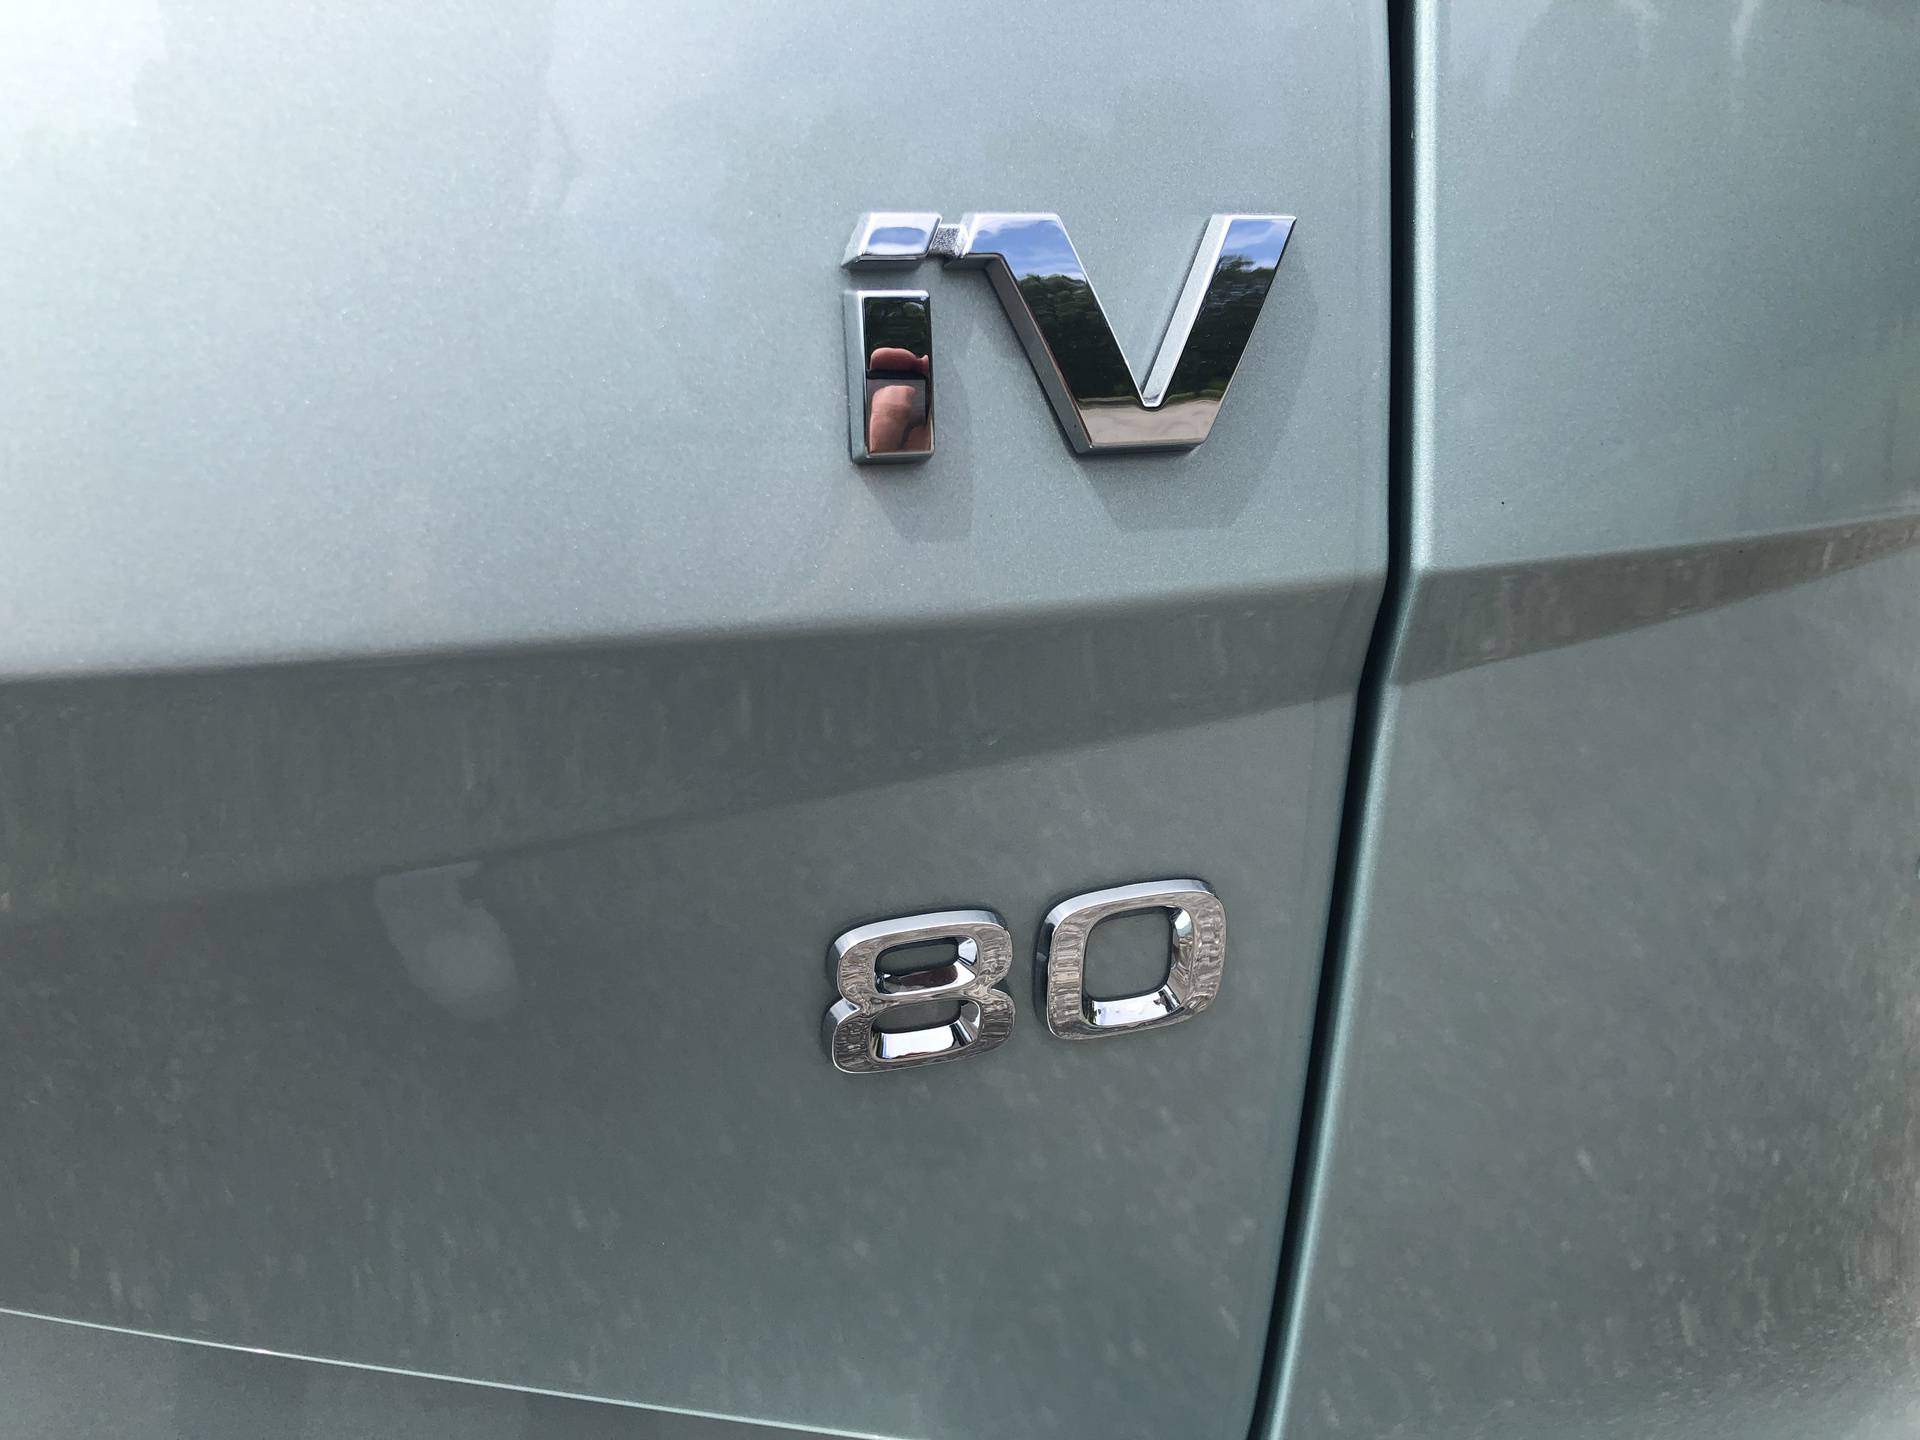 Škoda Enyaq - auto premium dojma i jedan od najboljih električnih SUV-ova trenutno